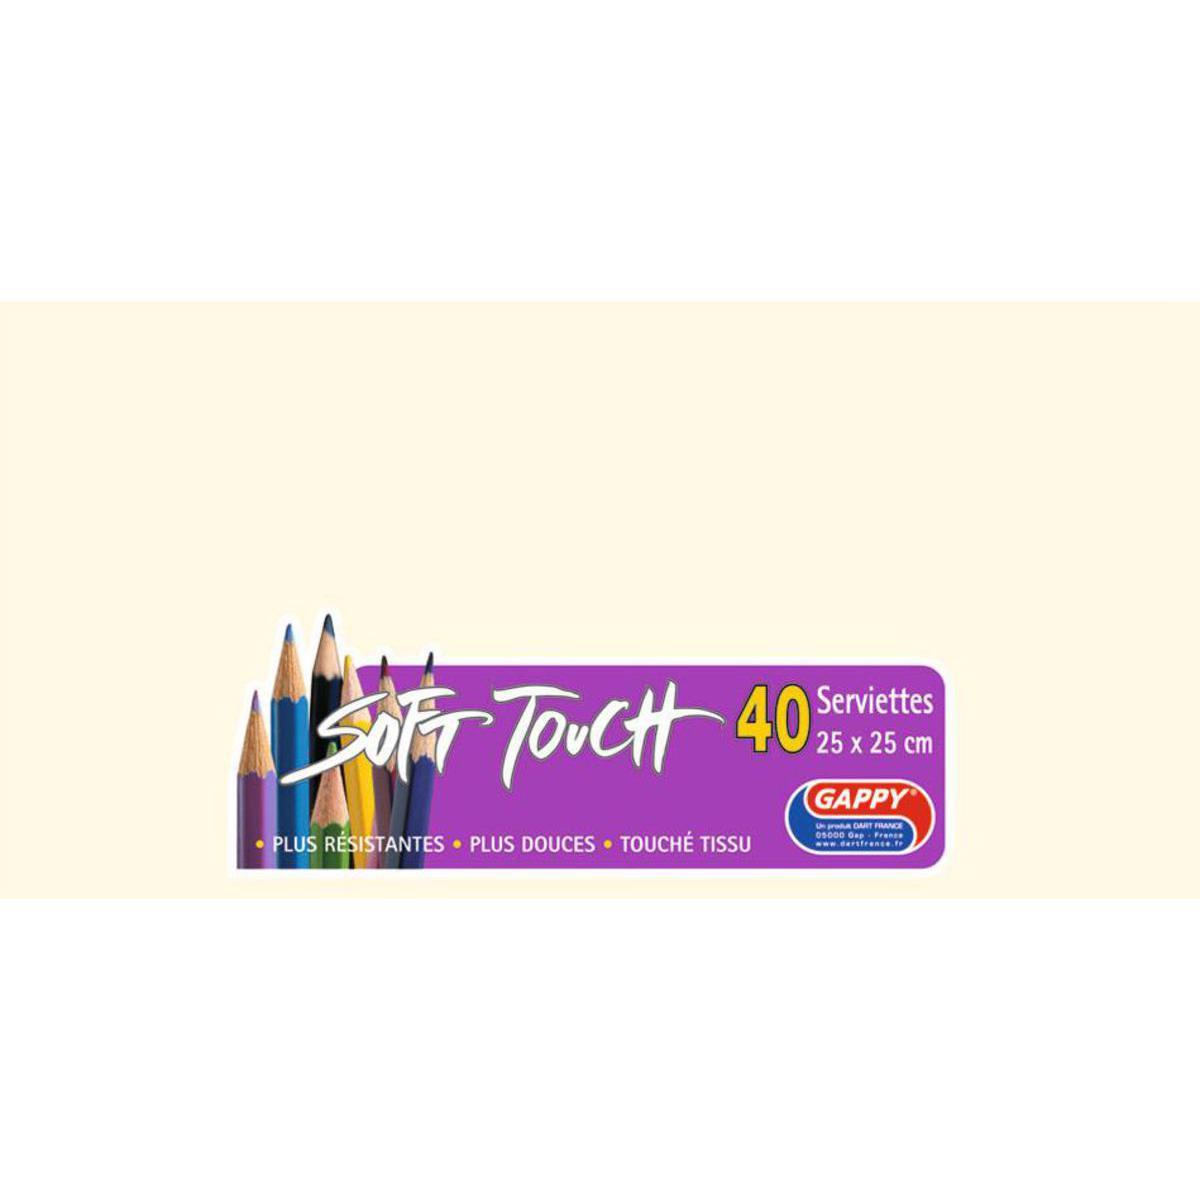 Lot de 40 serviettes papier Soft Touch Gappy - 25 x 25 cm - Pure Ouate de Cellulose - Orange